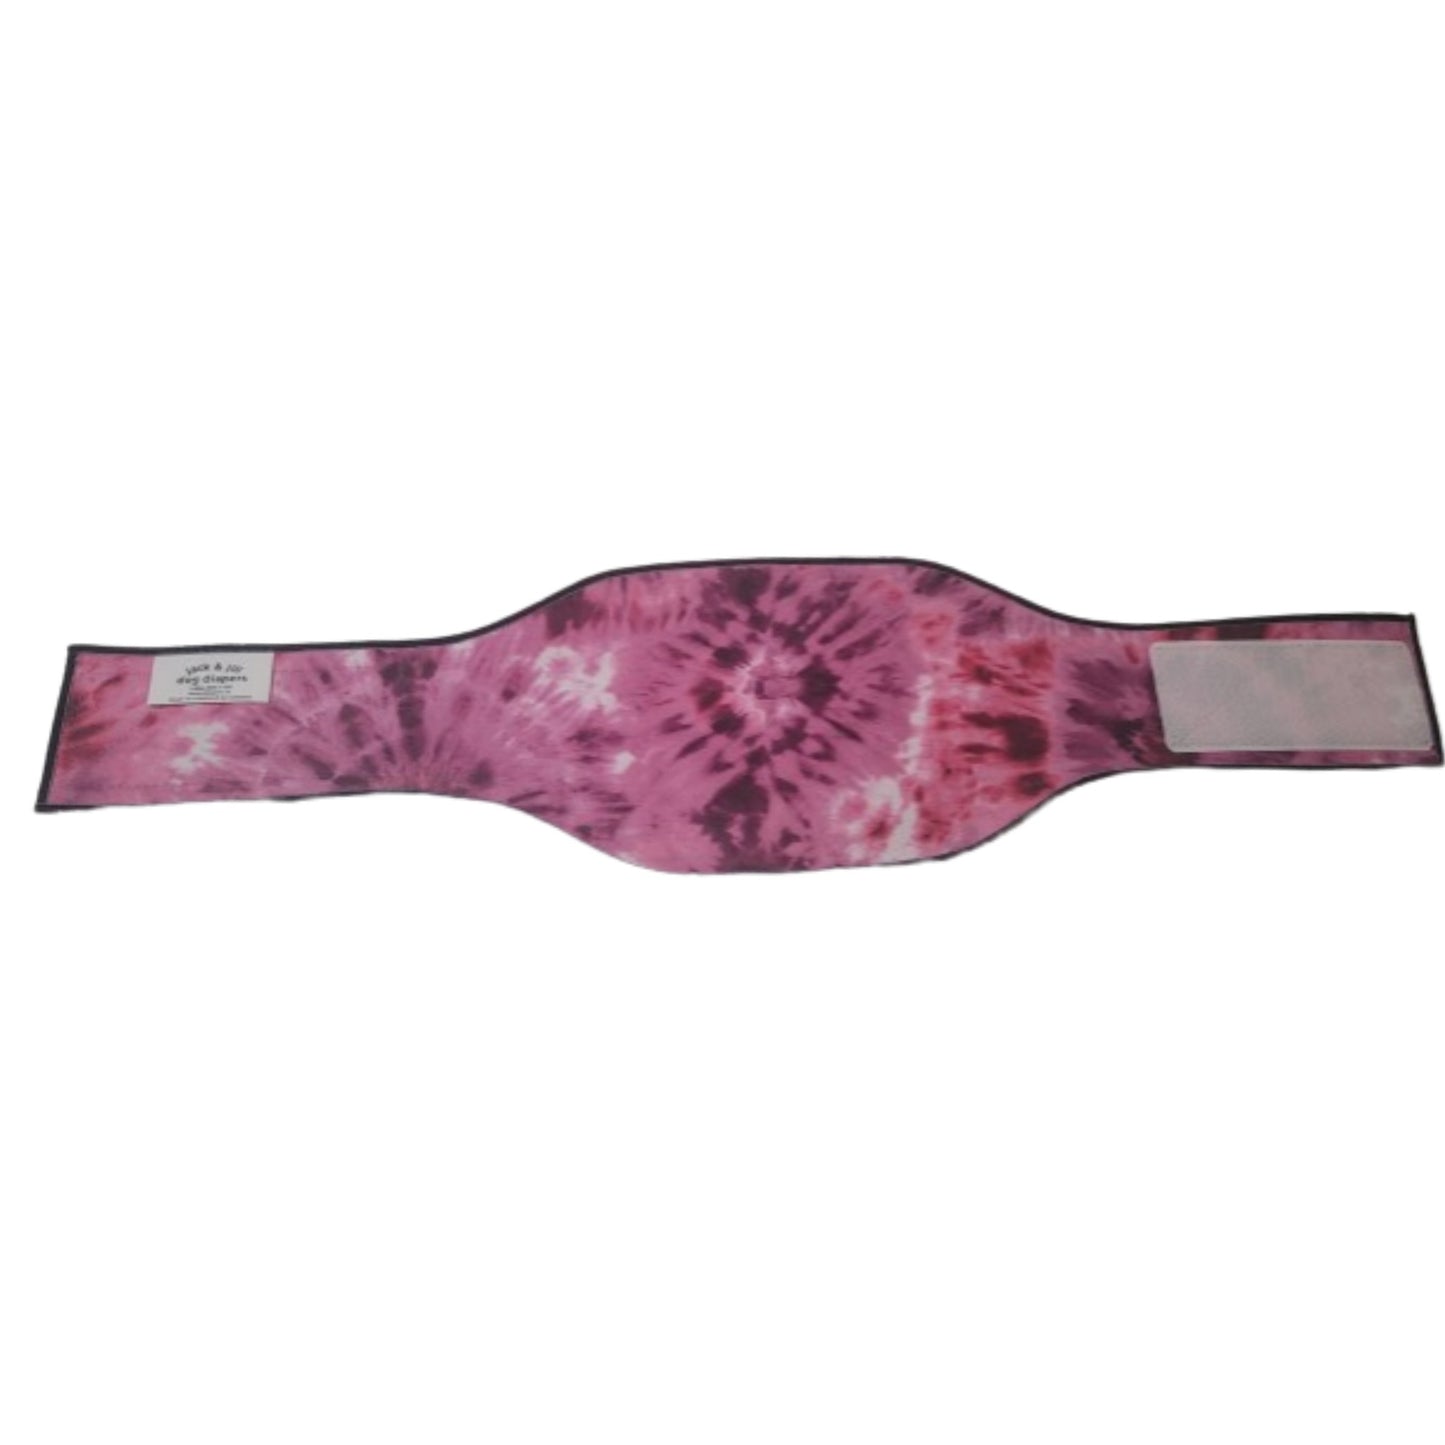 Male Dog Belly Band Wrap - Purple Tie Dye